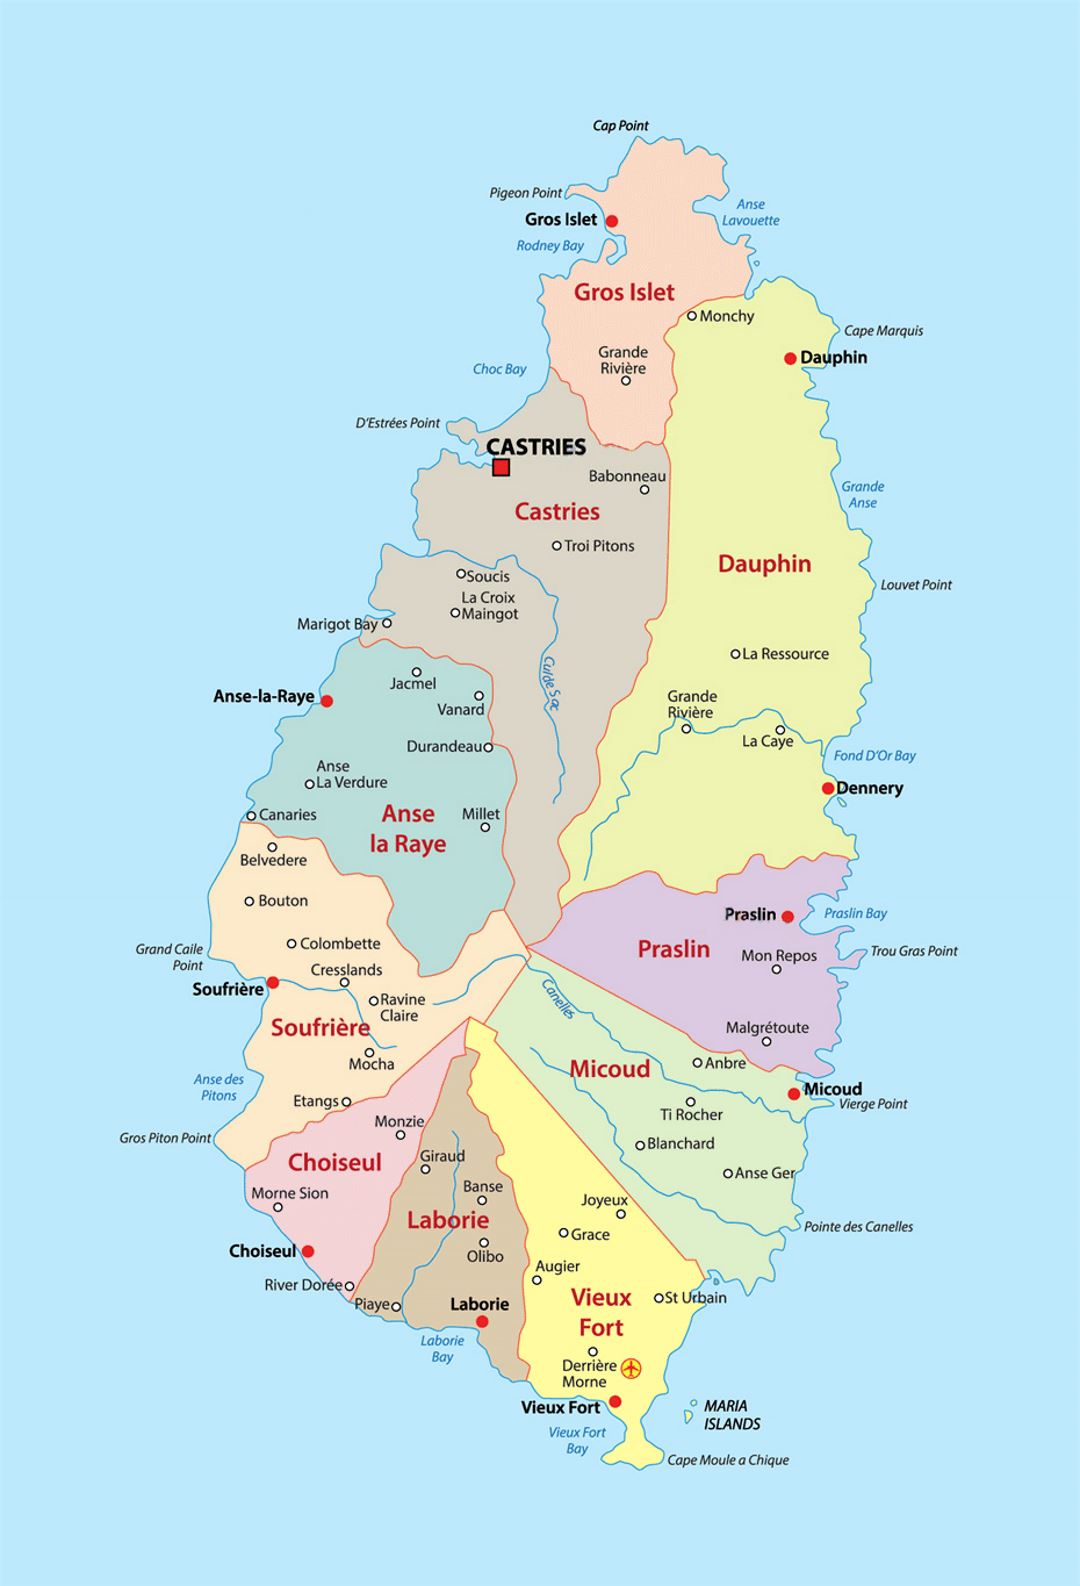 Детальная карта административных делений Сент-Люсии с городами